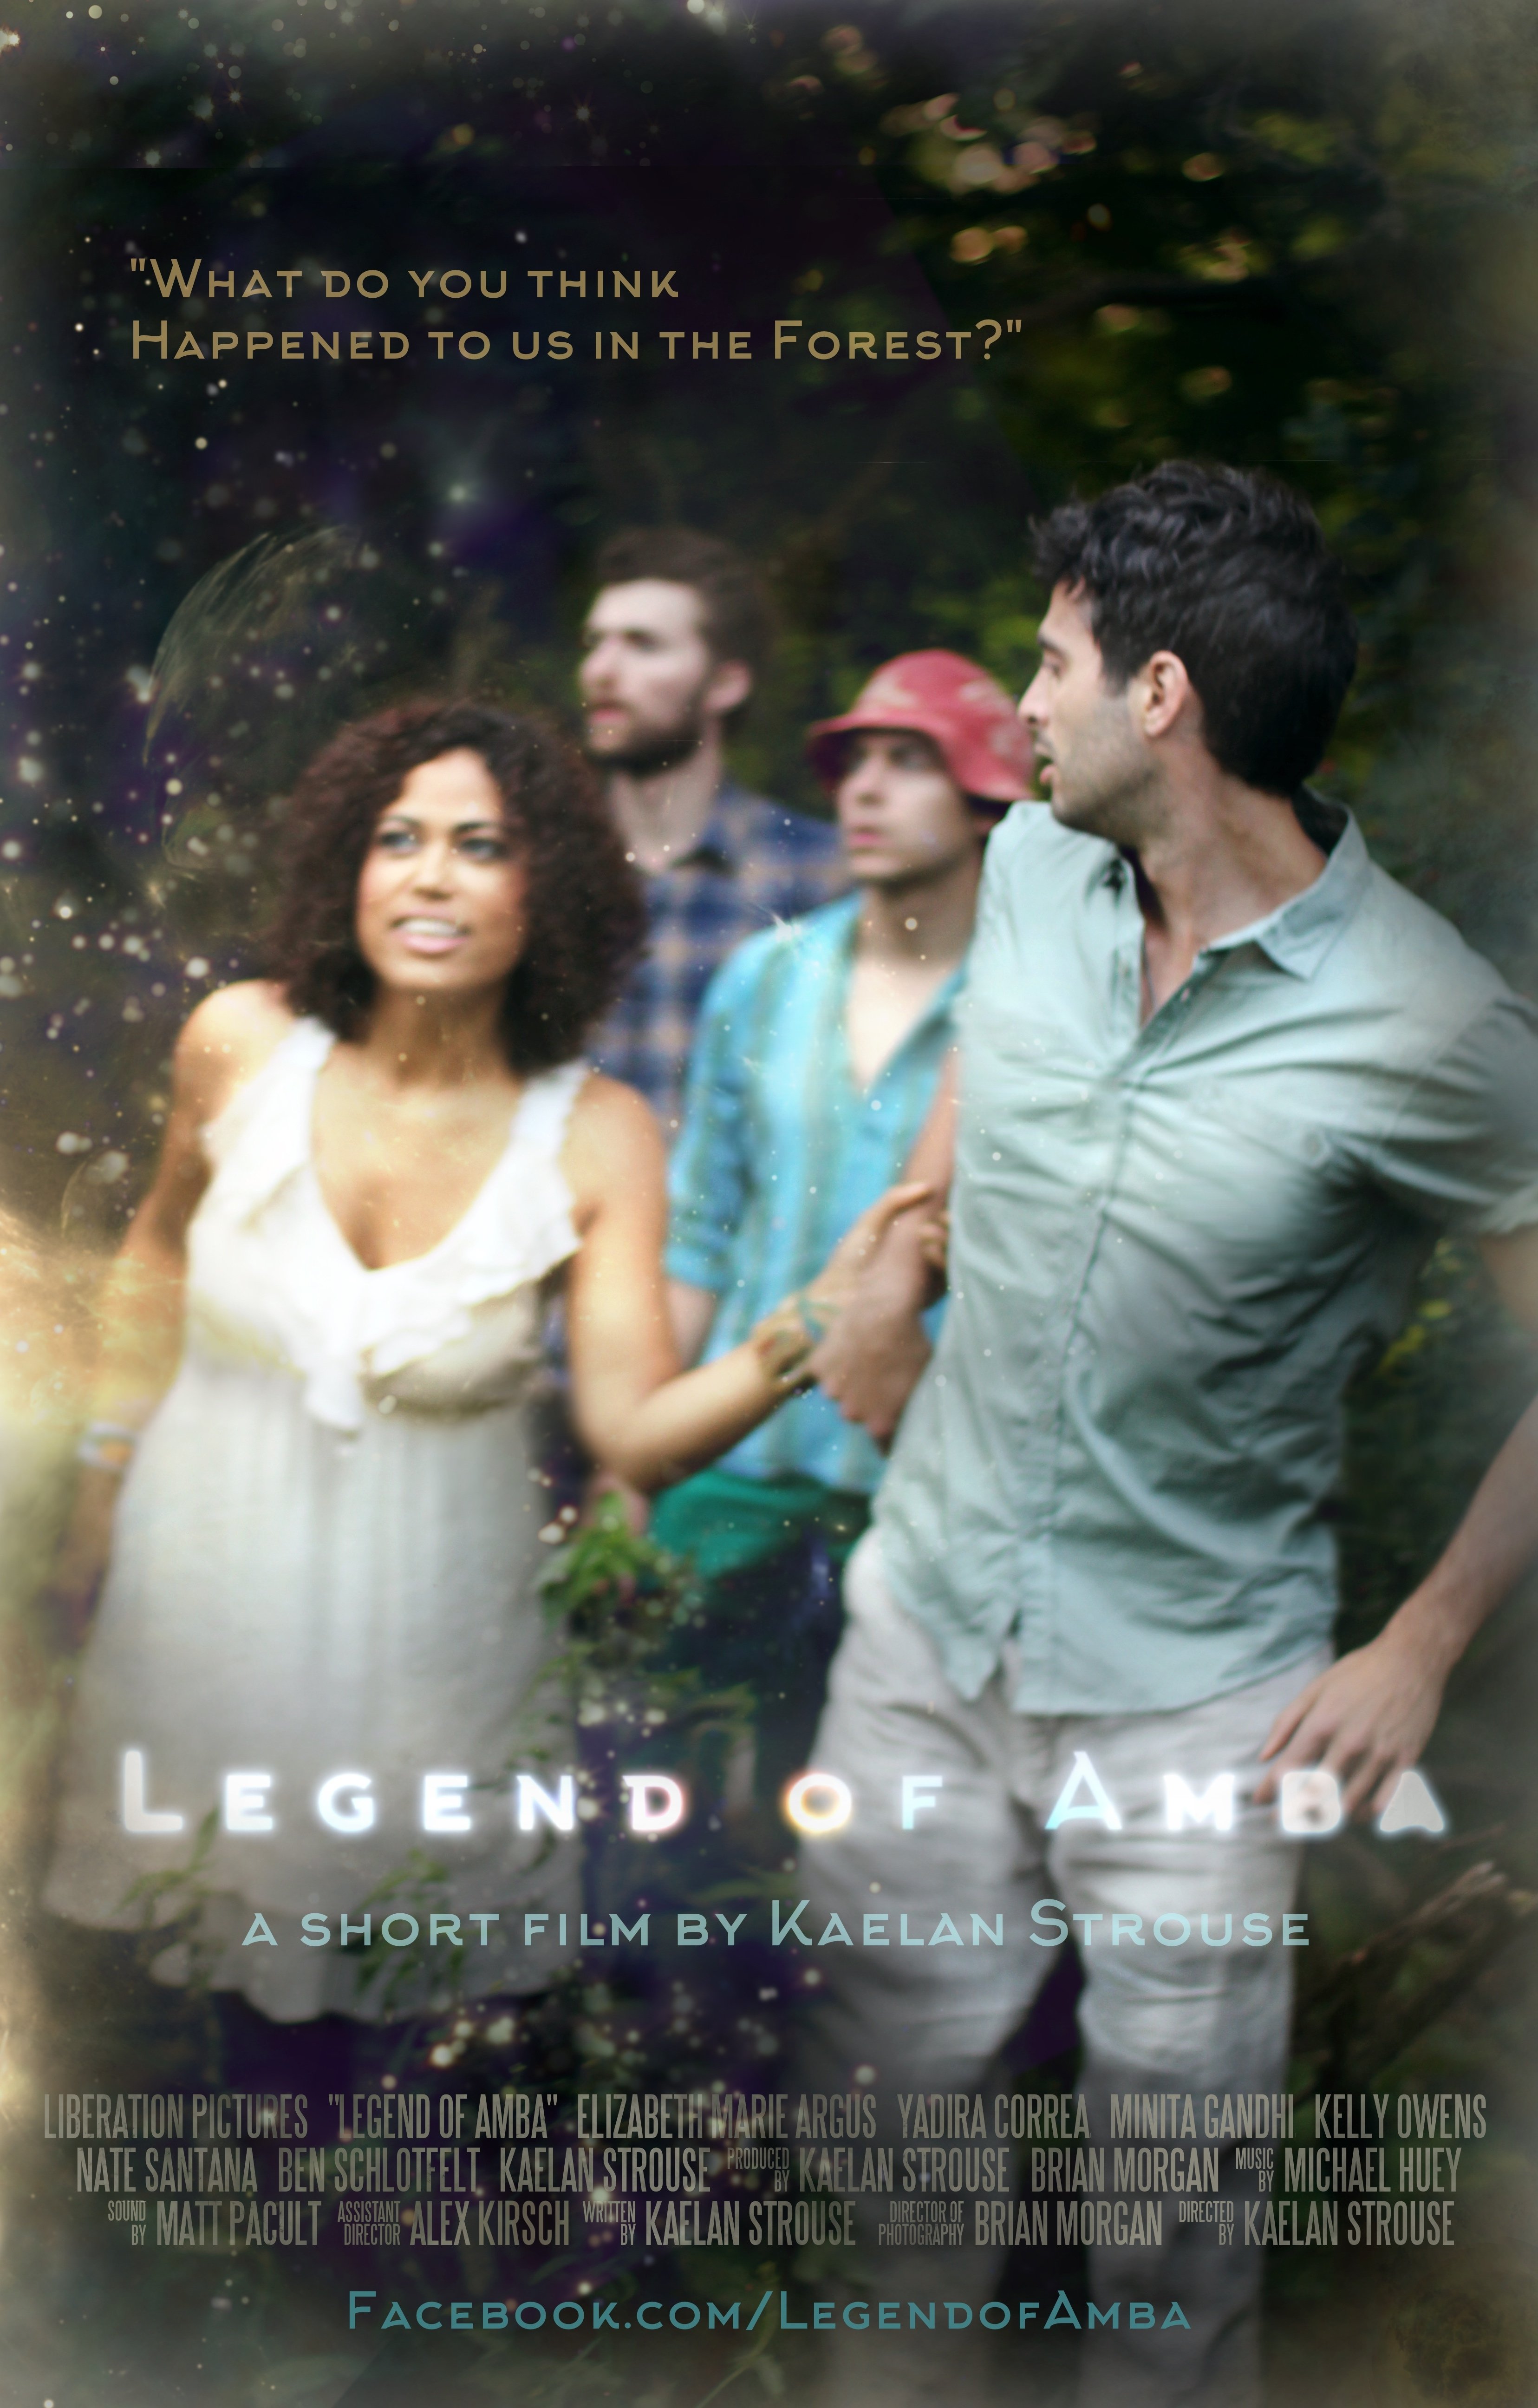 Nate Santana, Kaelan Strouse, Ben Schlotfelt and Yadira Correa in Legend of Amba (2015)